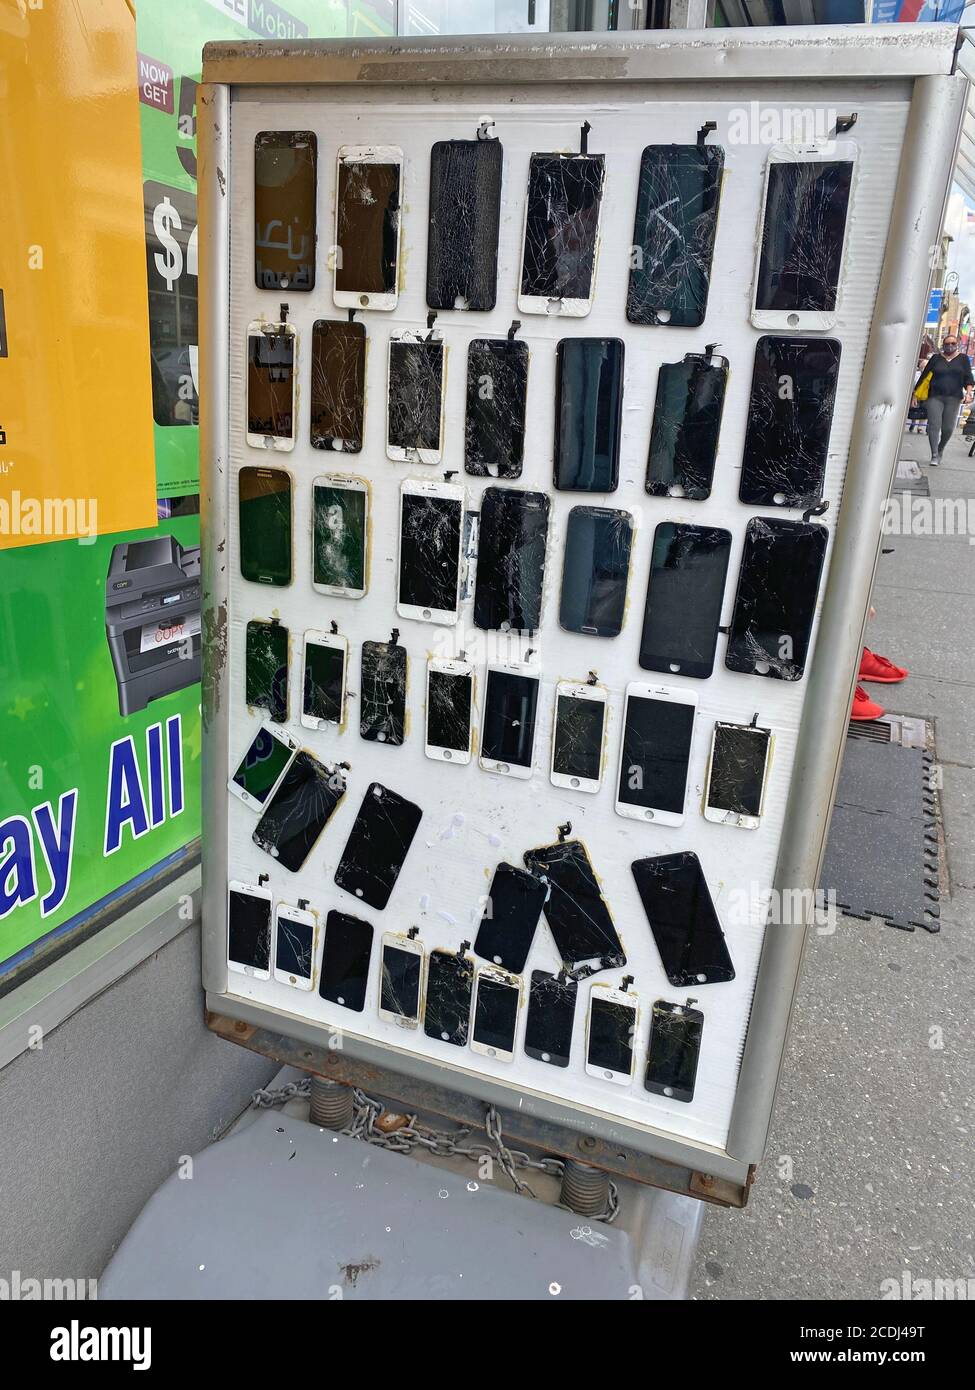 Affichage d'écrans de téléphone cellulaire fissurés et d'autres dommages à l'extérieur d'un magasin qui fixe des téléphones cellulaires une petite entreprise lucrative sur Manhattan Avenue à Brooklyn, New York. Banque D'Images